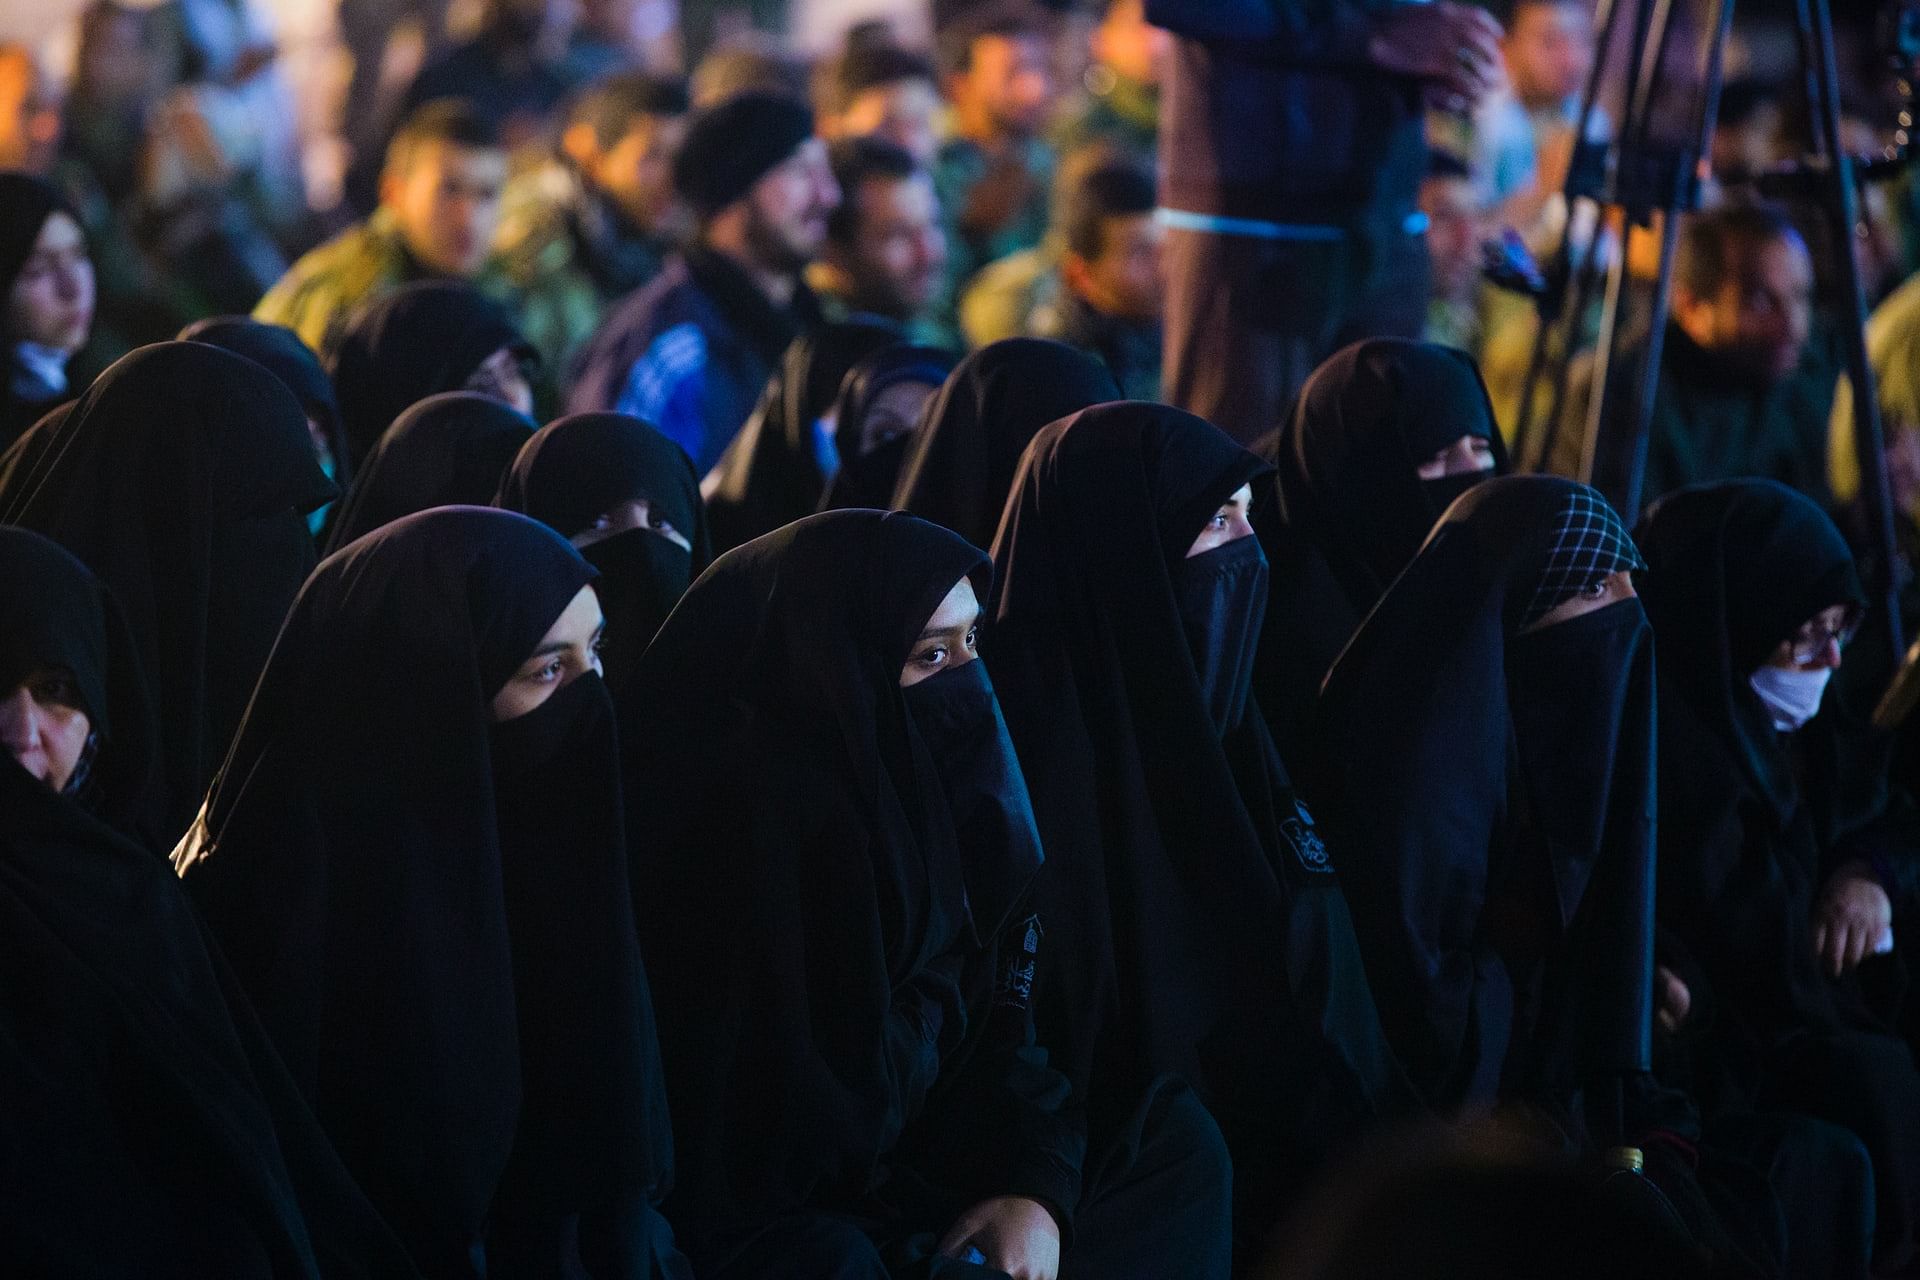 Women wearing Hijab (Representational Image)